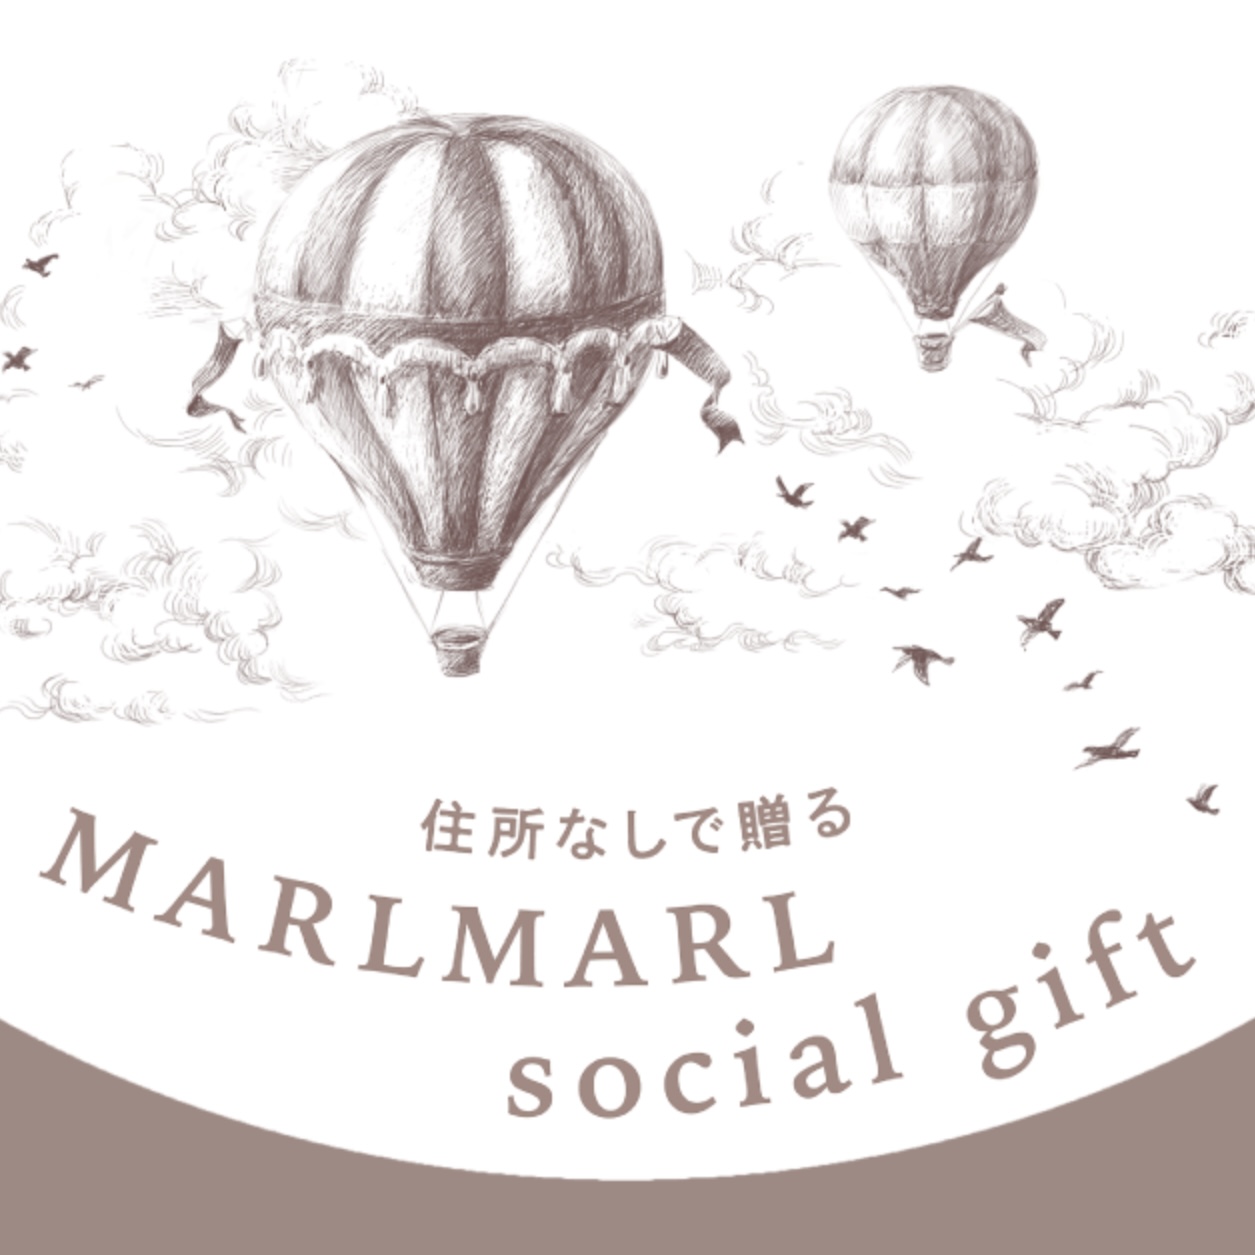 新しい贈り方が登場！ MARLMARL social gift